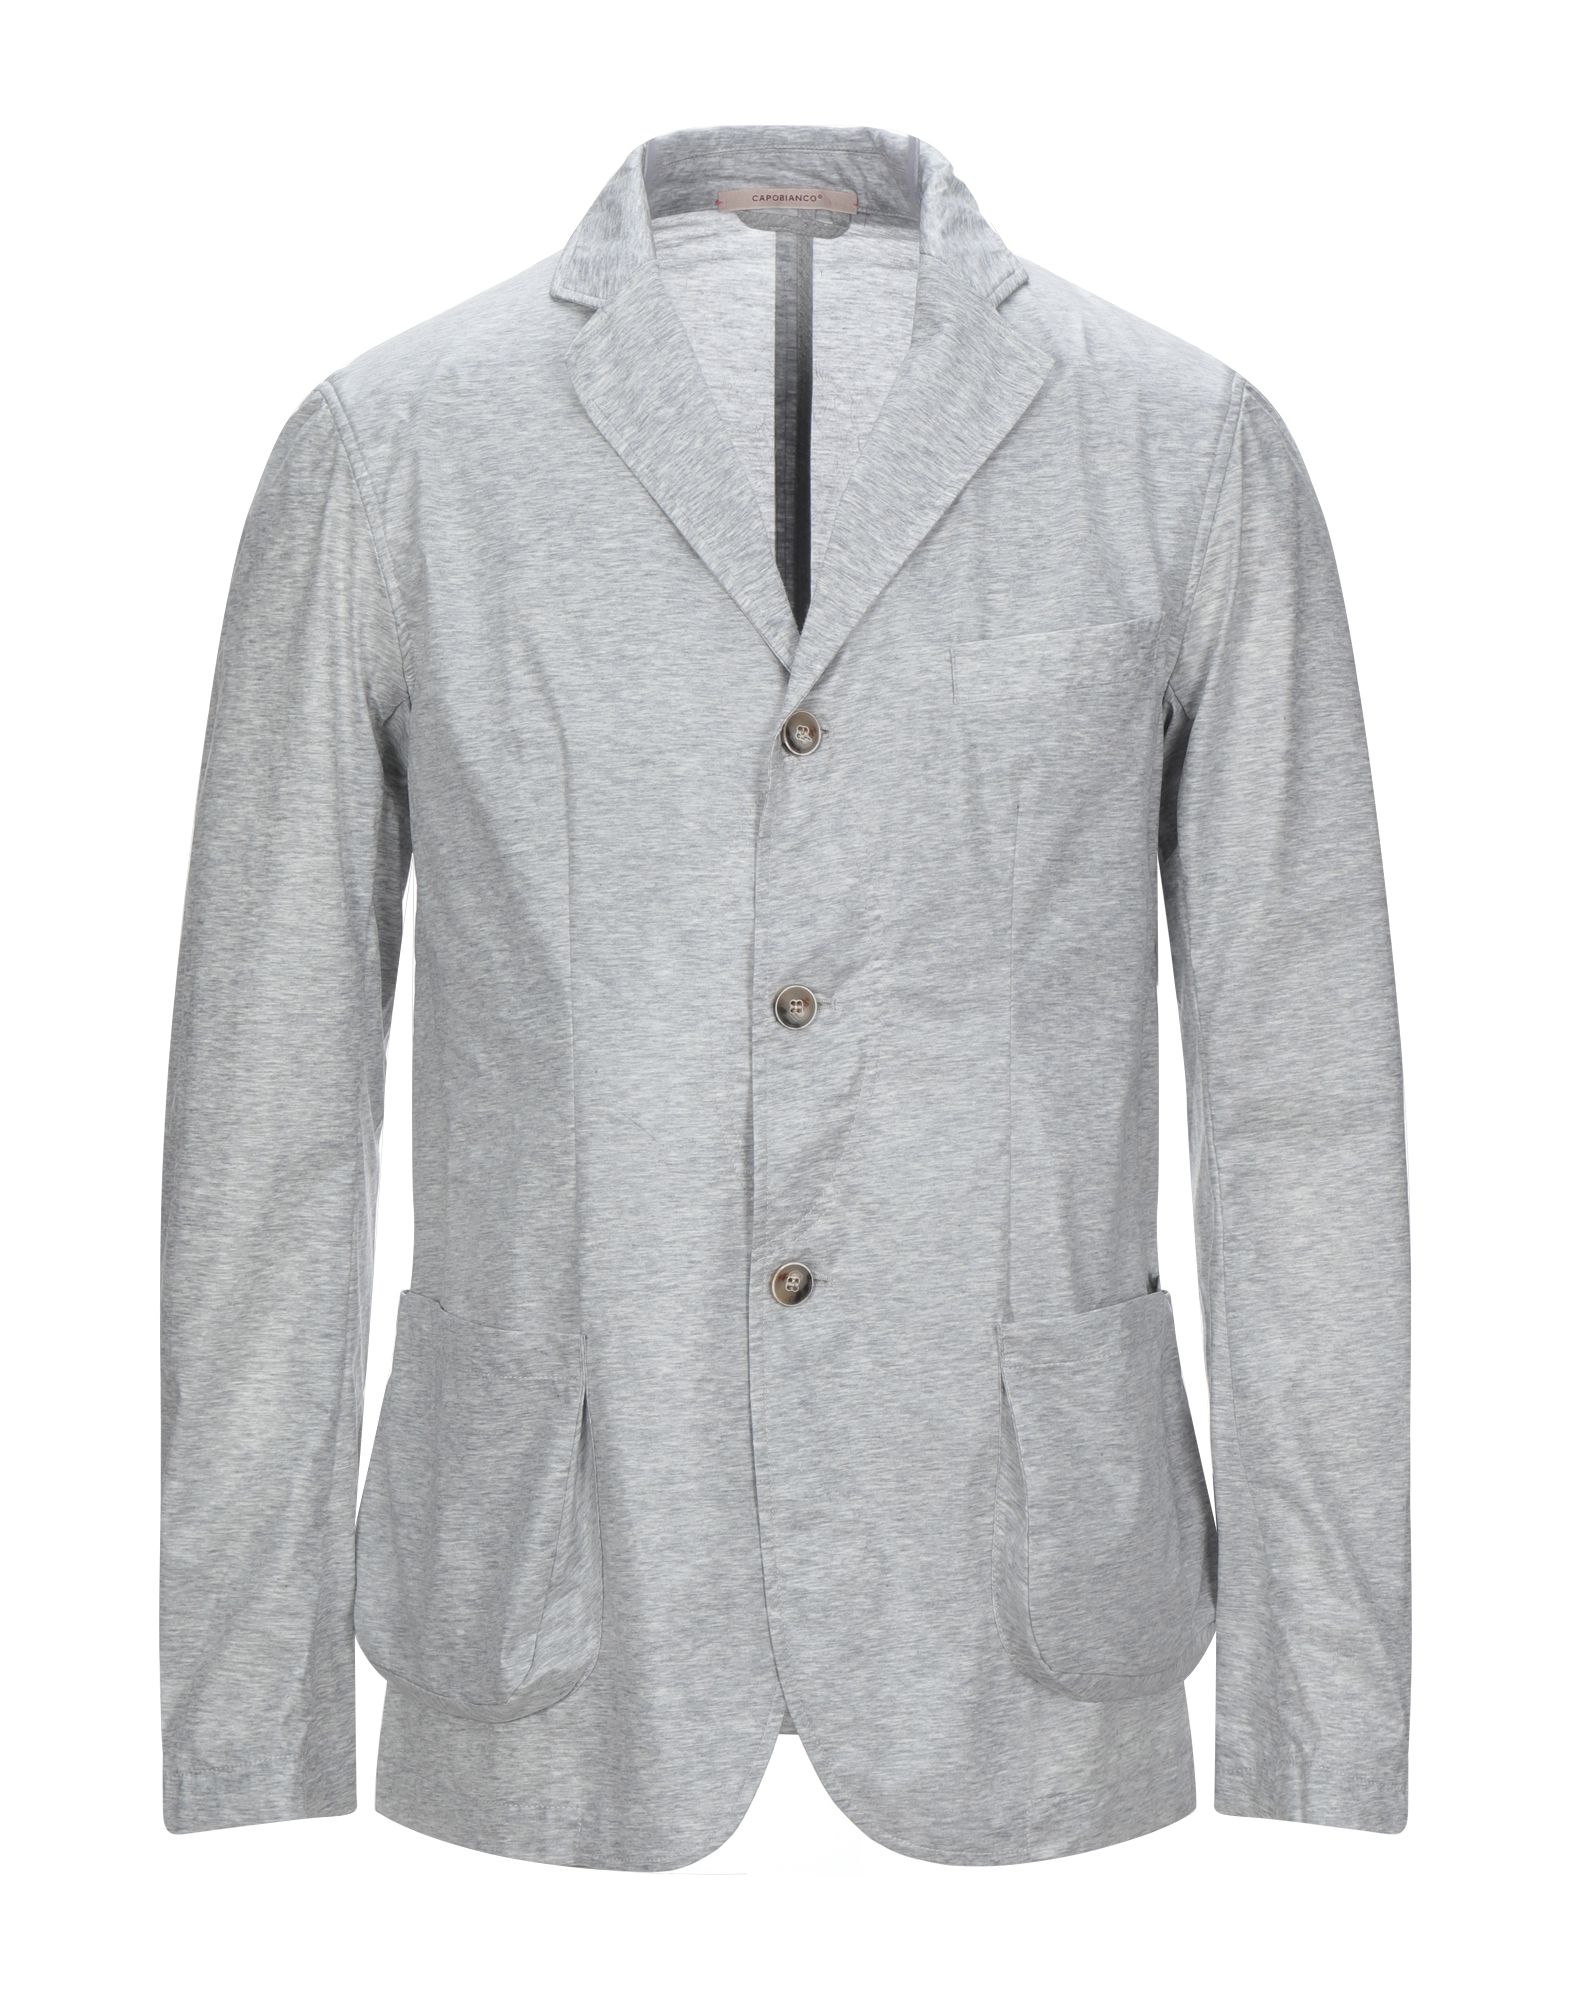 CAPOBIANCO Suit jackets